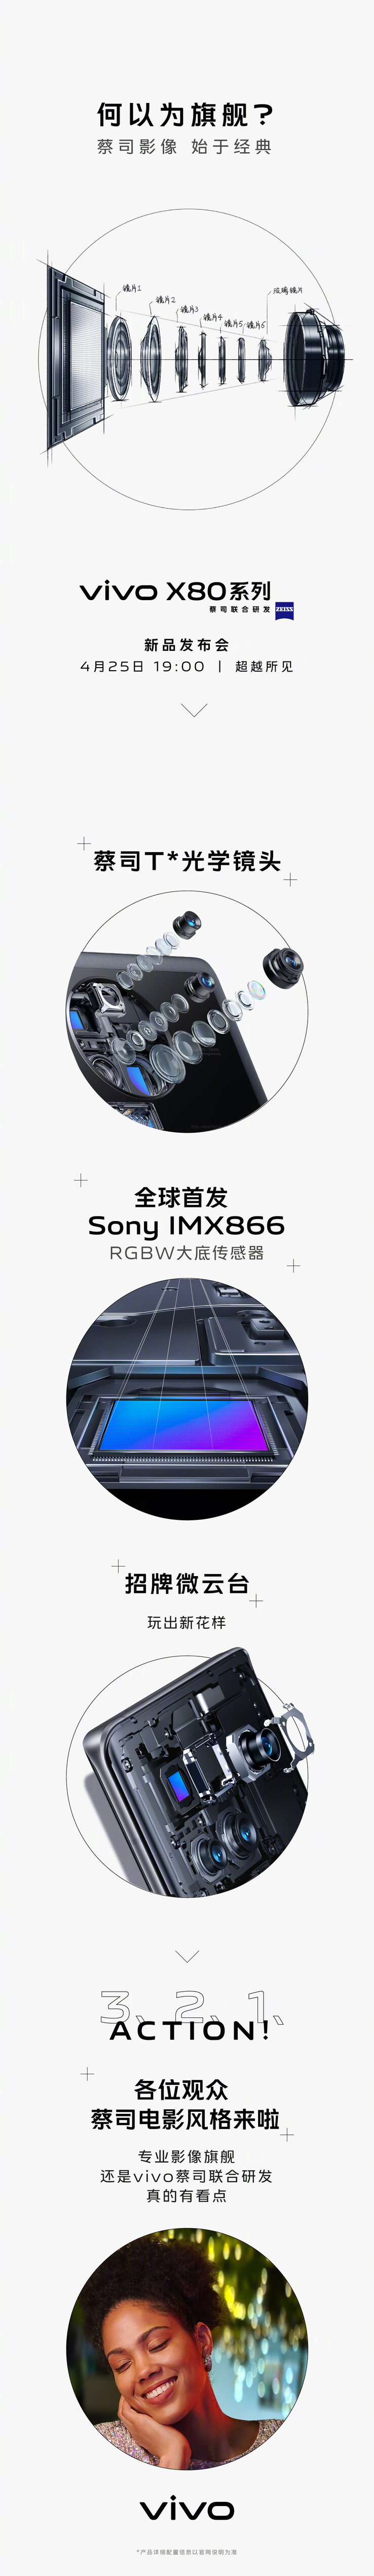 Vivo teaset de nieuwe Sony hoofdcamera van de X80s. (Bron: Vivo via Weibo)